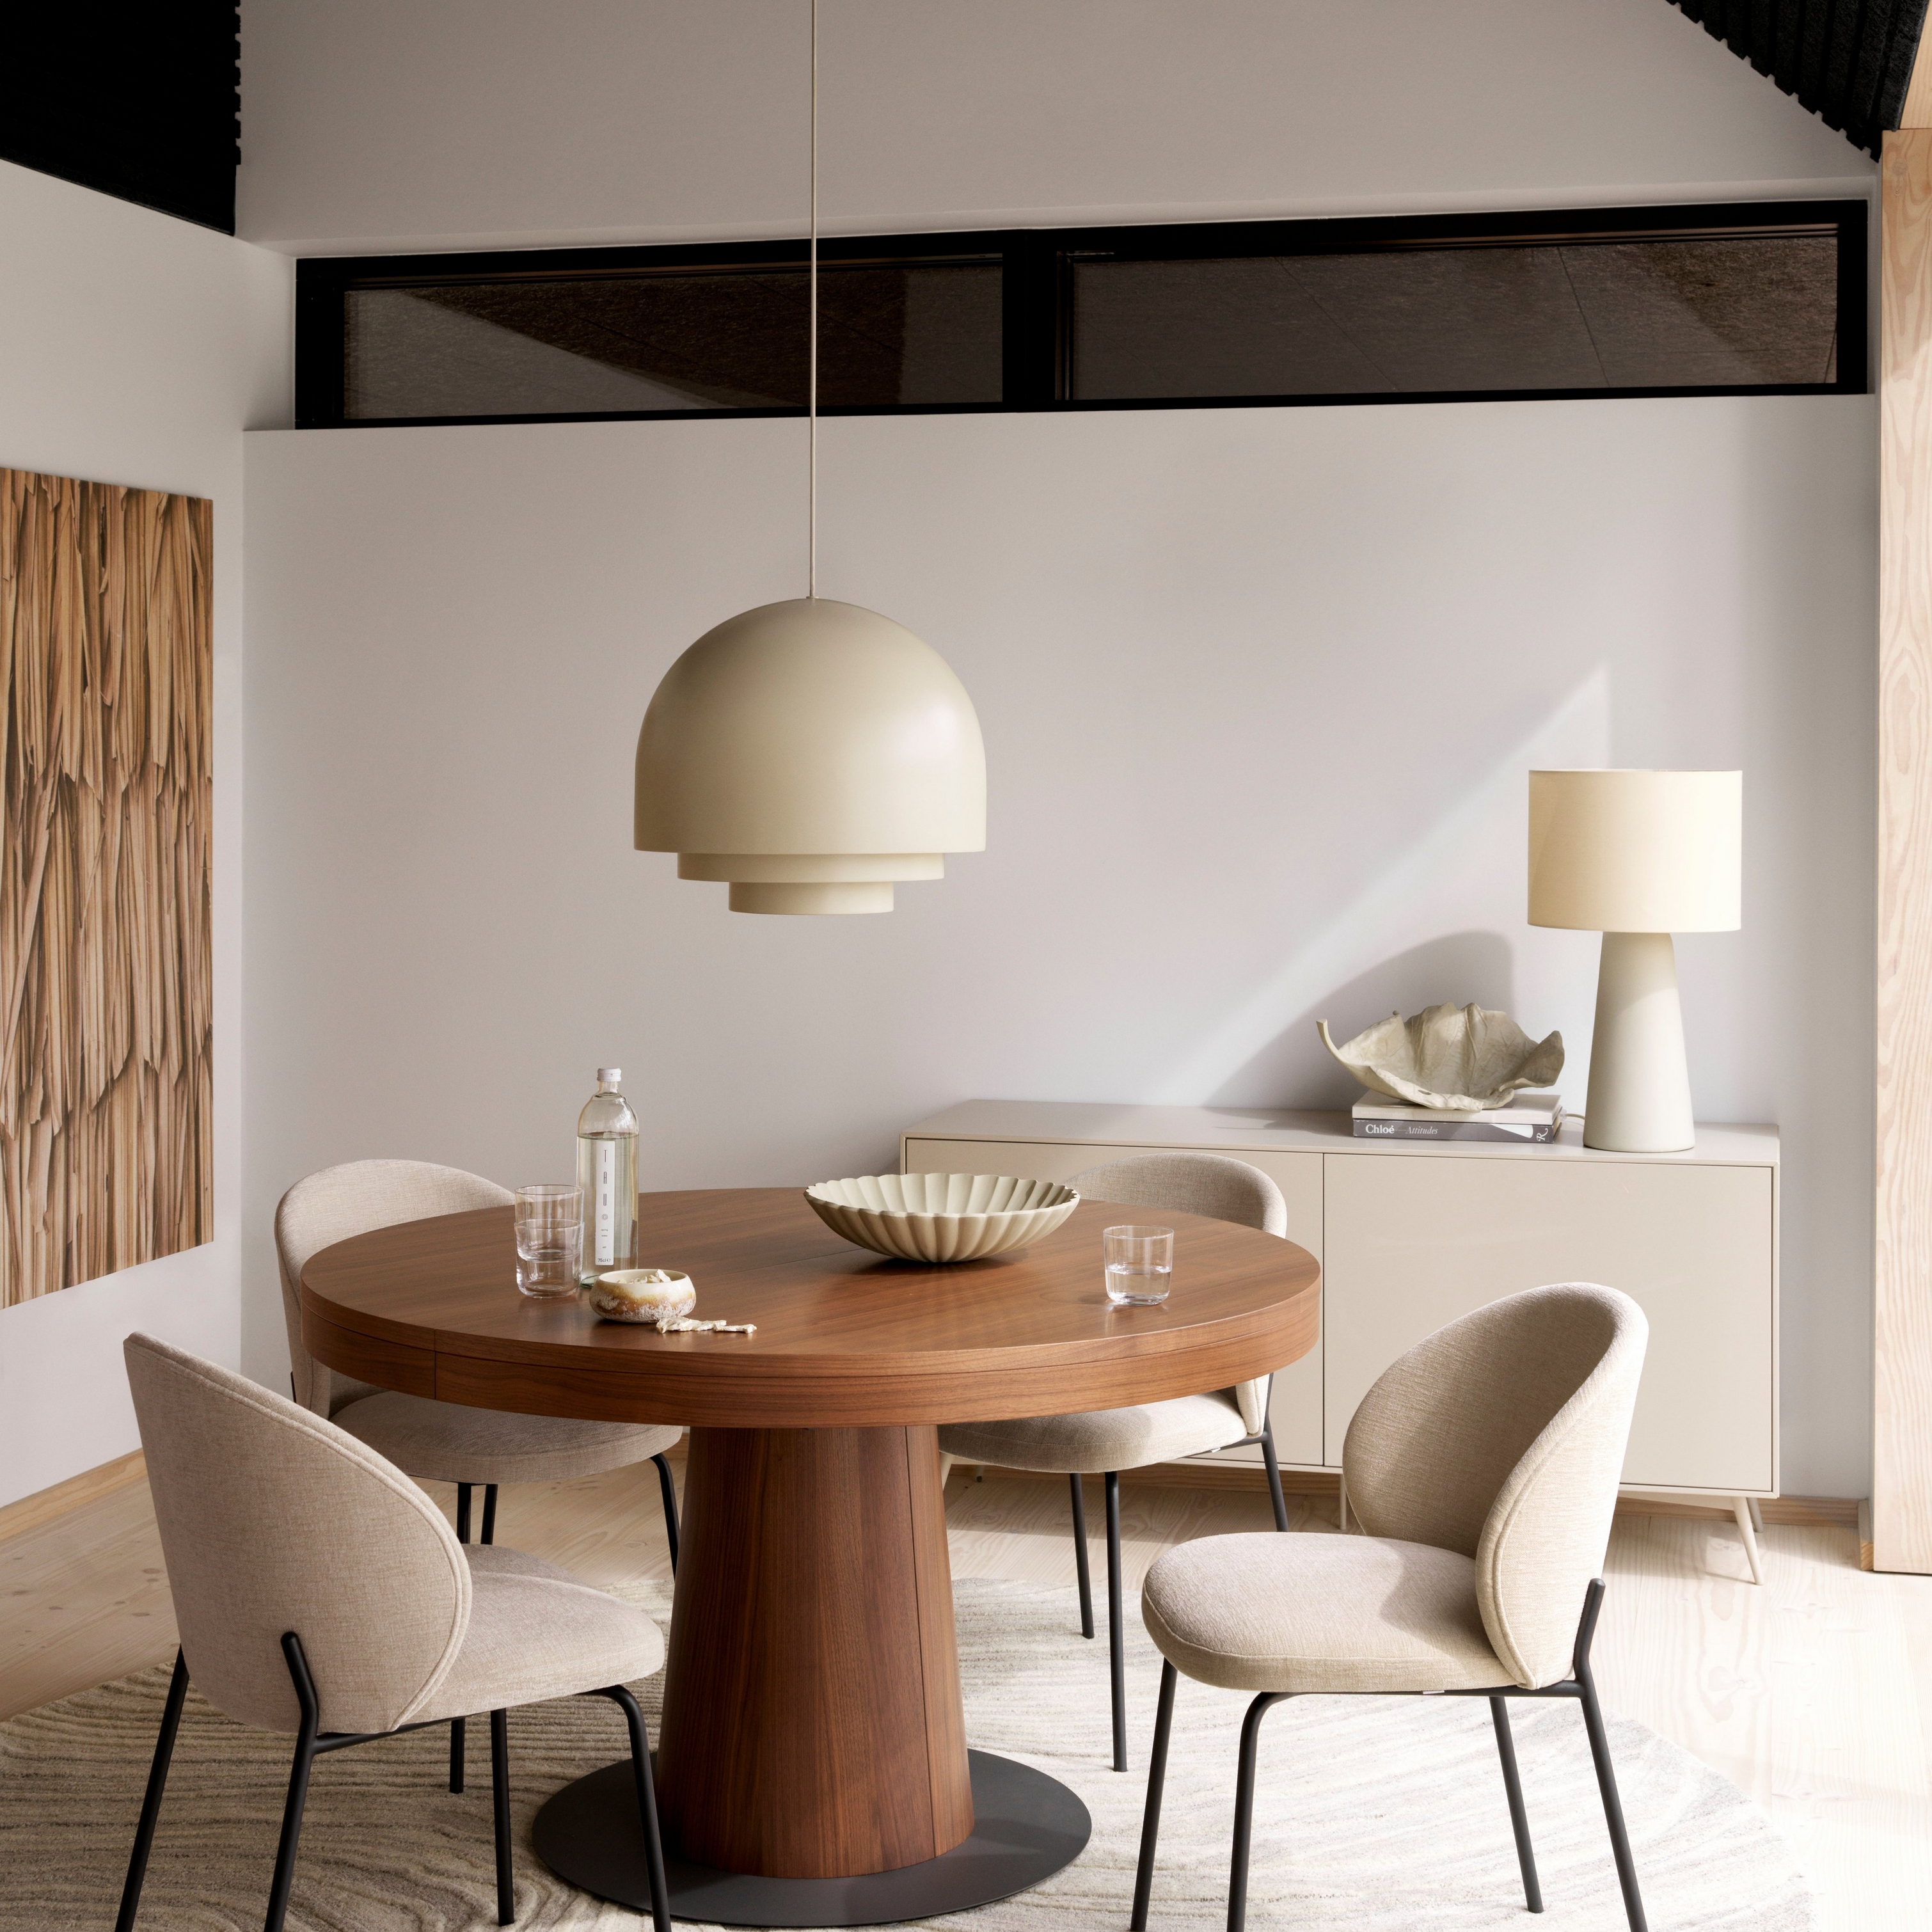 現代用餐室採用圓形木質 Granada 桌、米色 Princeton 椅子、吊燈和奶油色地毯。